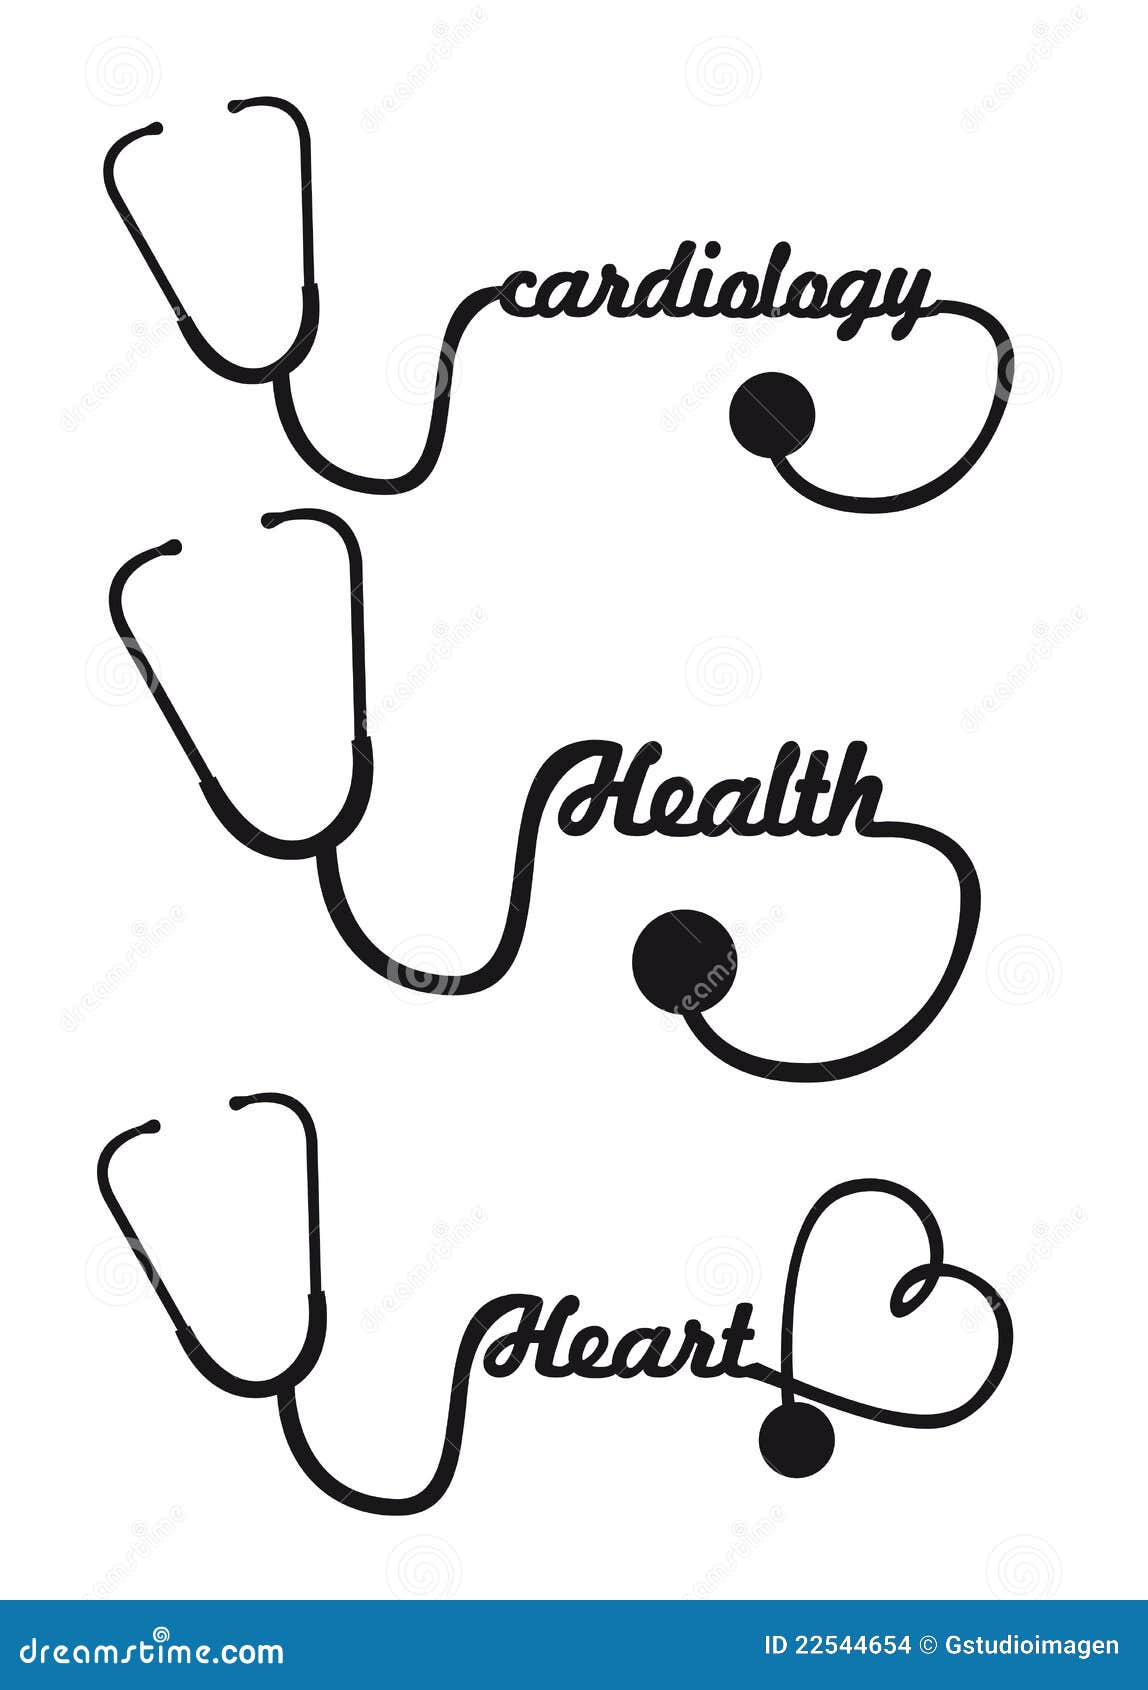 Stethoscope Stock Images - Image: 22544654